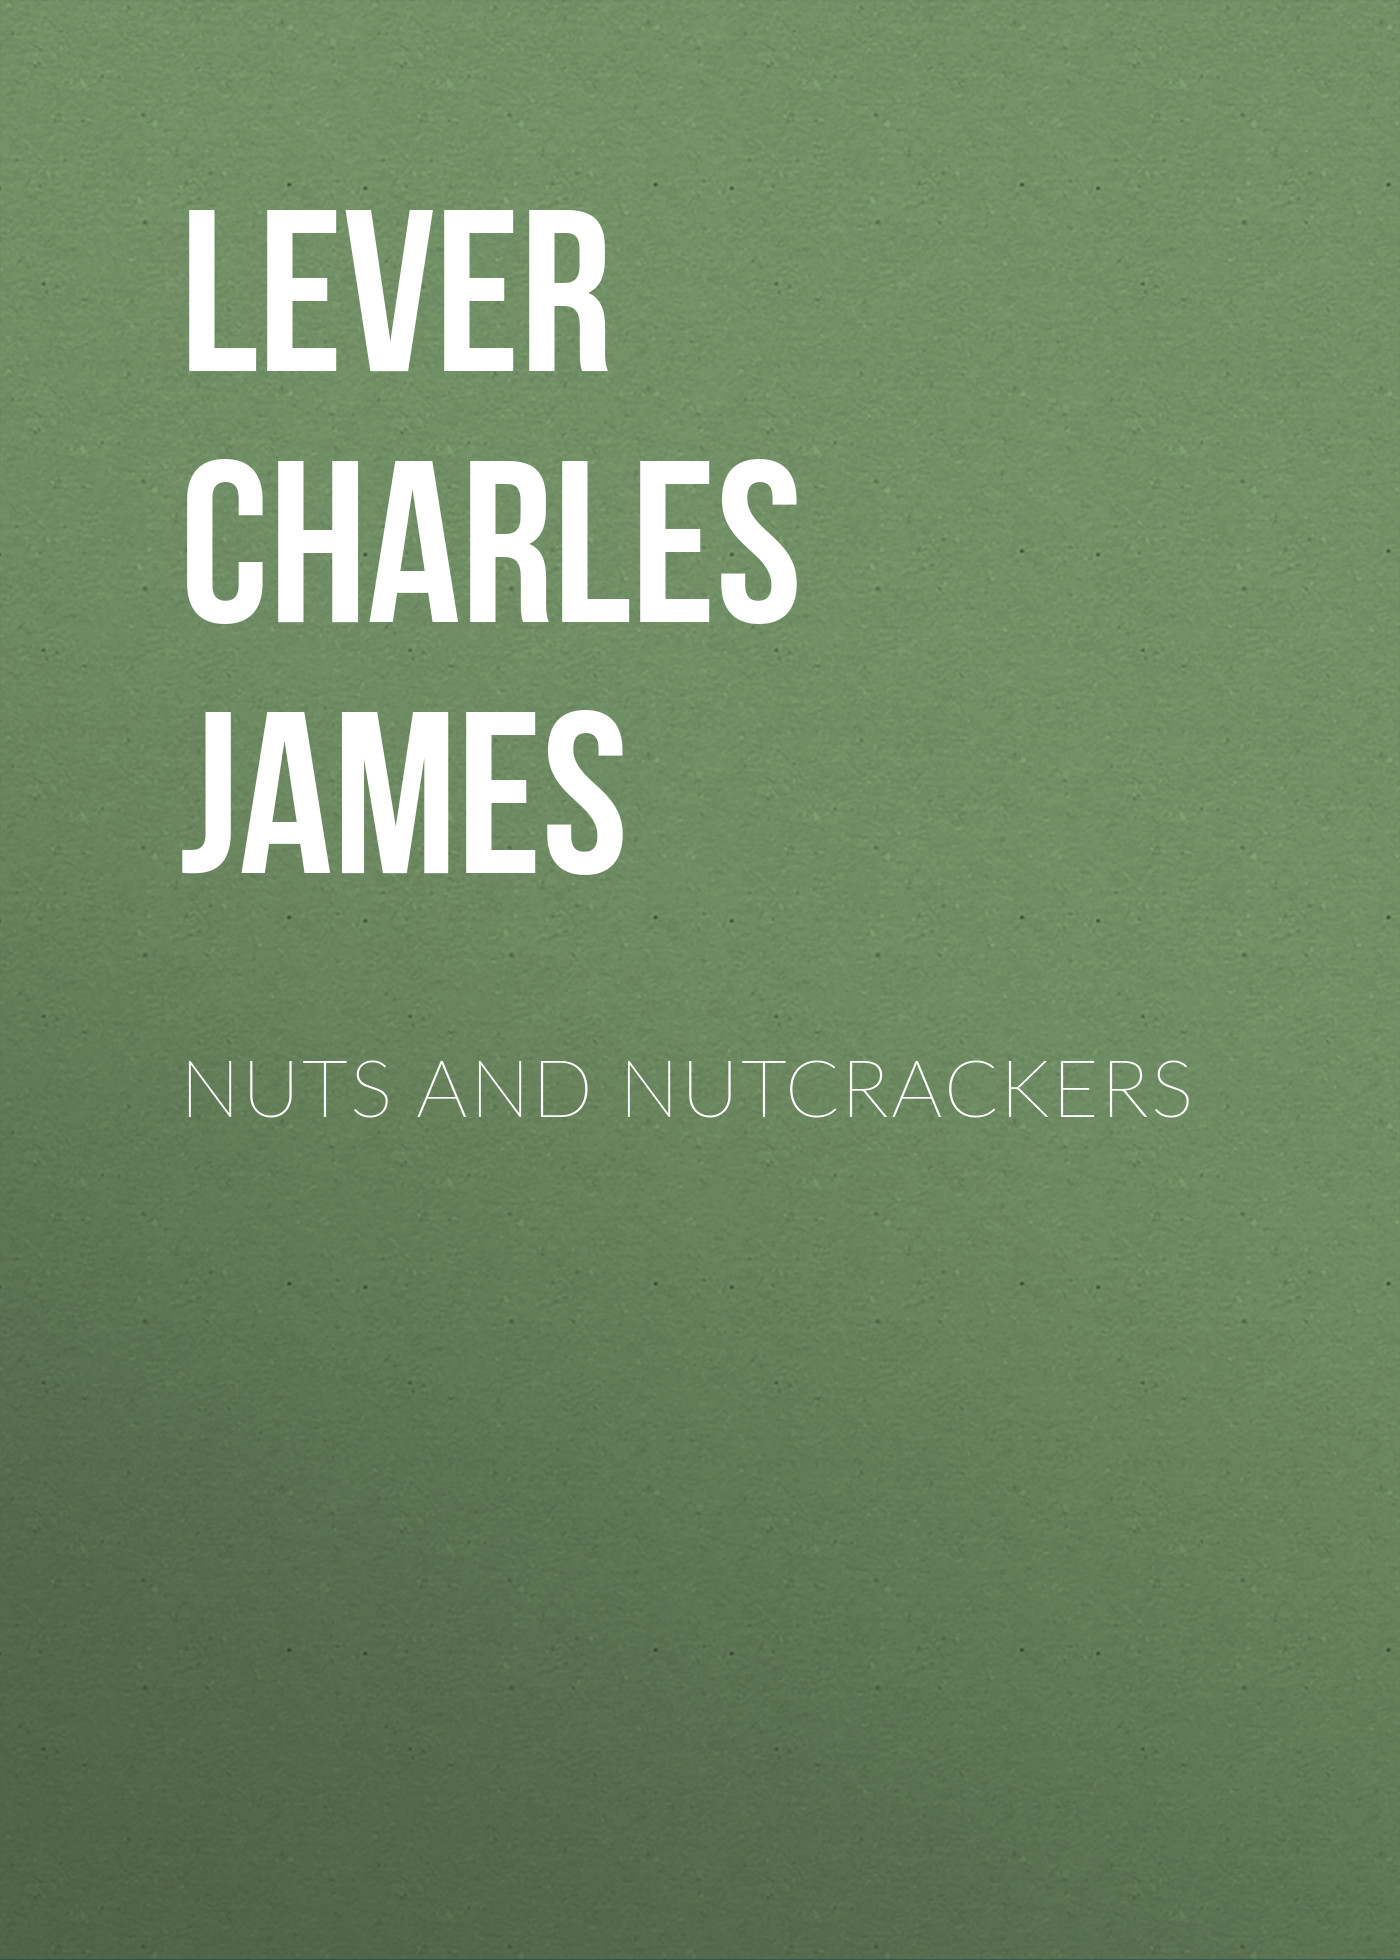 Книга Nuts and Nutcrackers из серии , созданная Charles Lever, может относится к жанру Литература 19 века, Зарубежная старинная литература, Зарубежная классика. Стоимость электронной книги Nuts and Nutcrackers с идентификатором 25451012 составляет 0 руб.